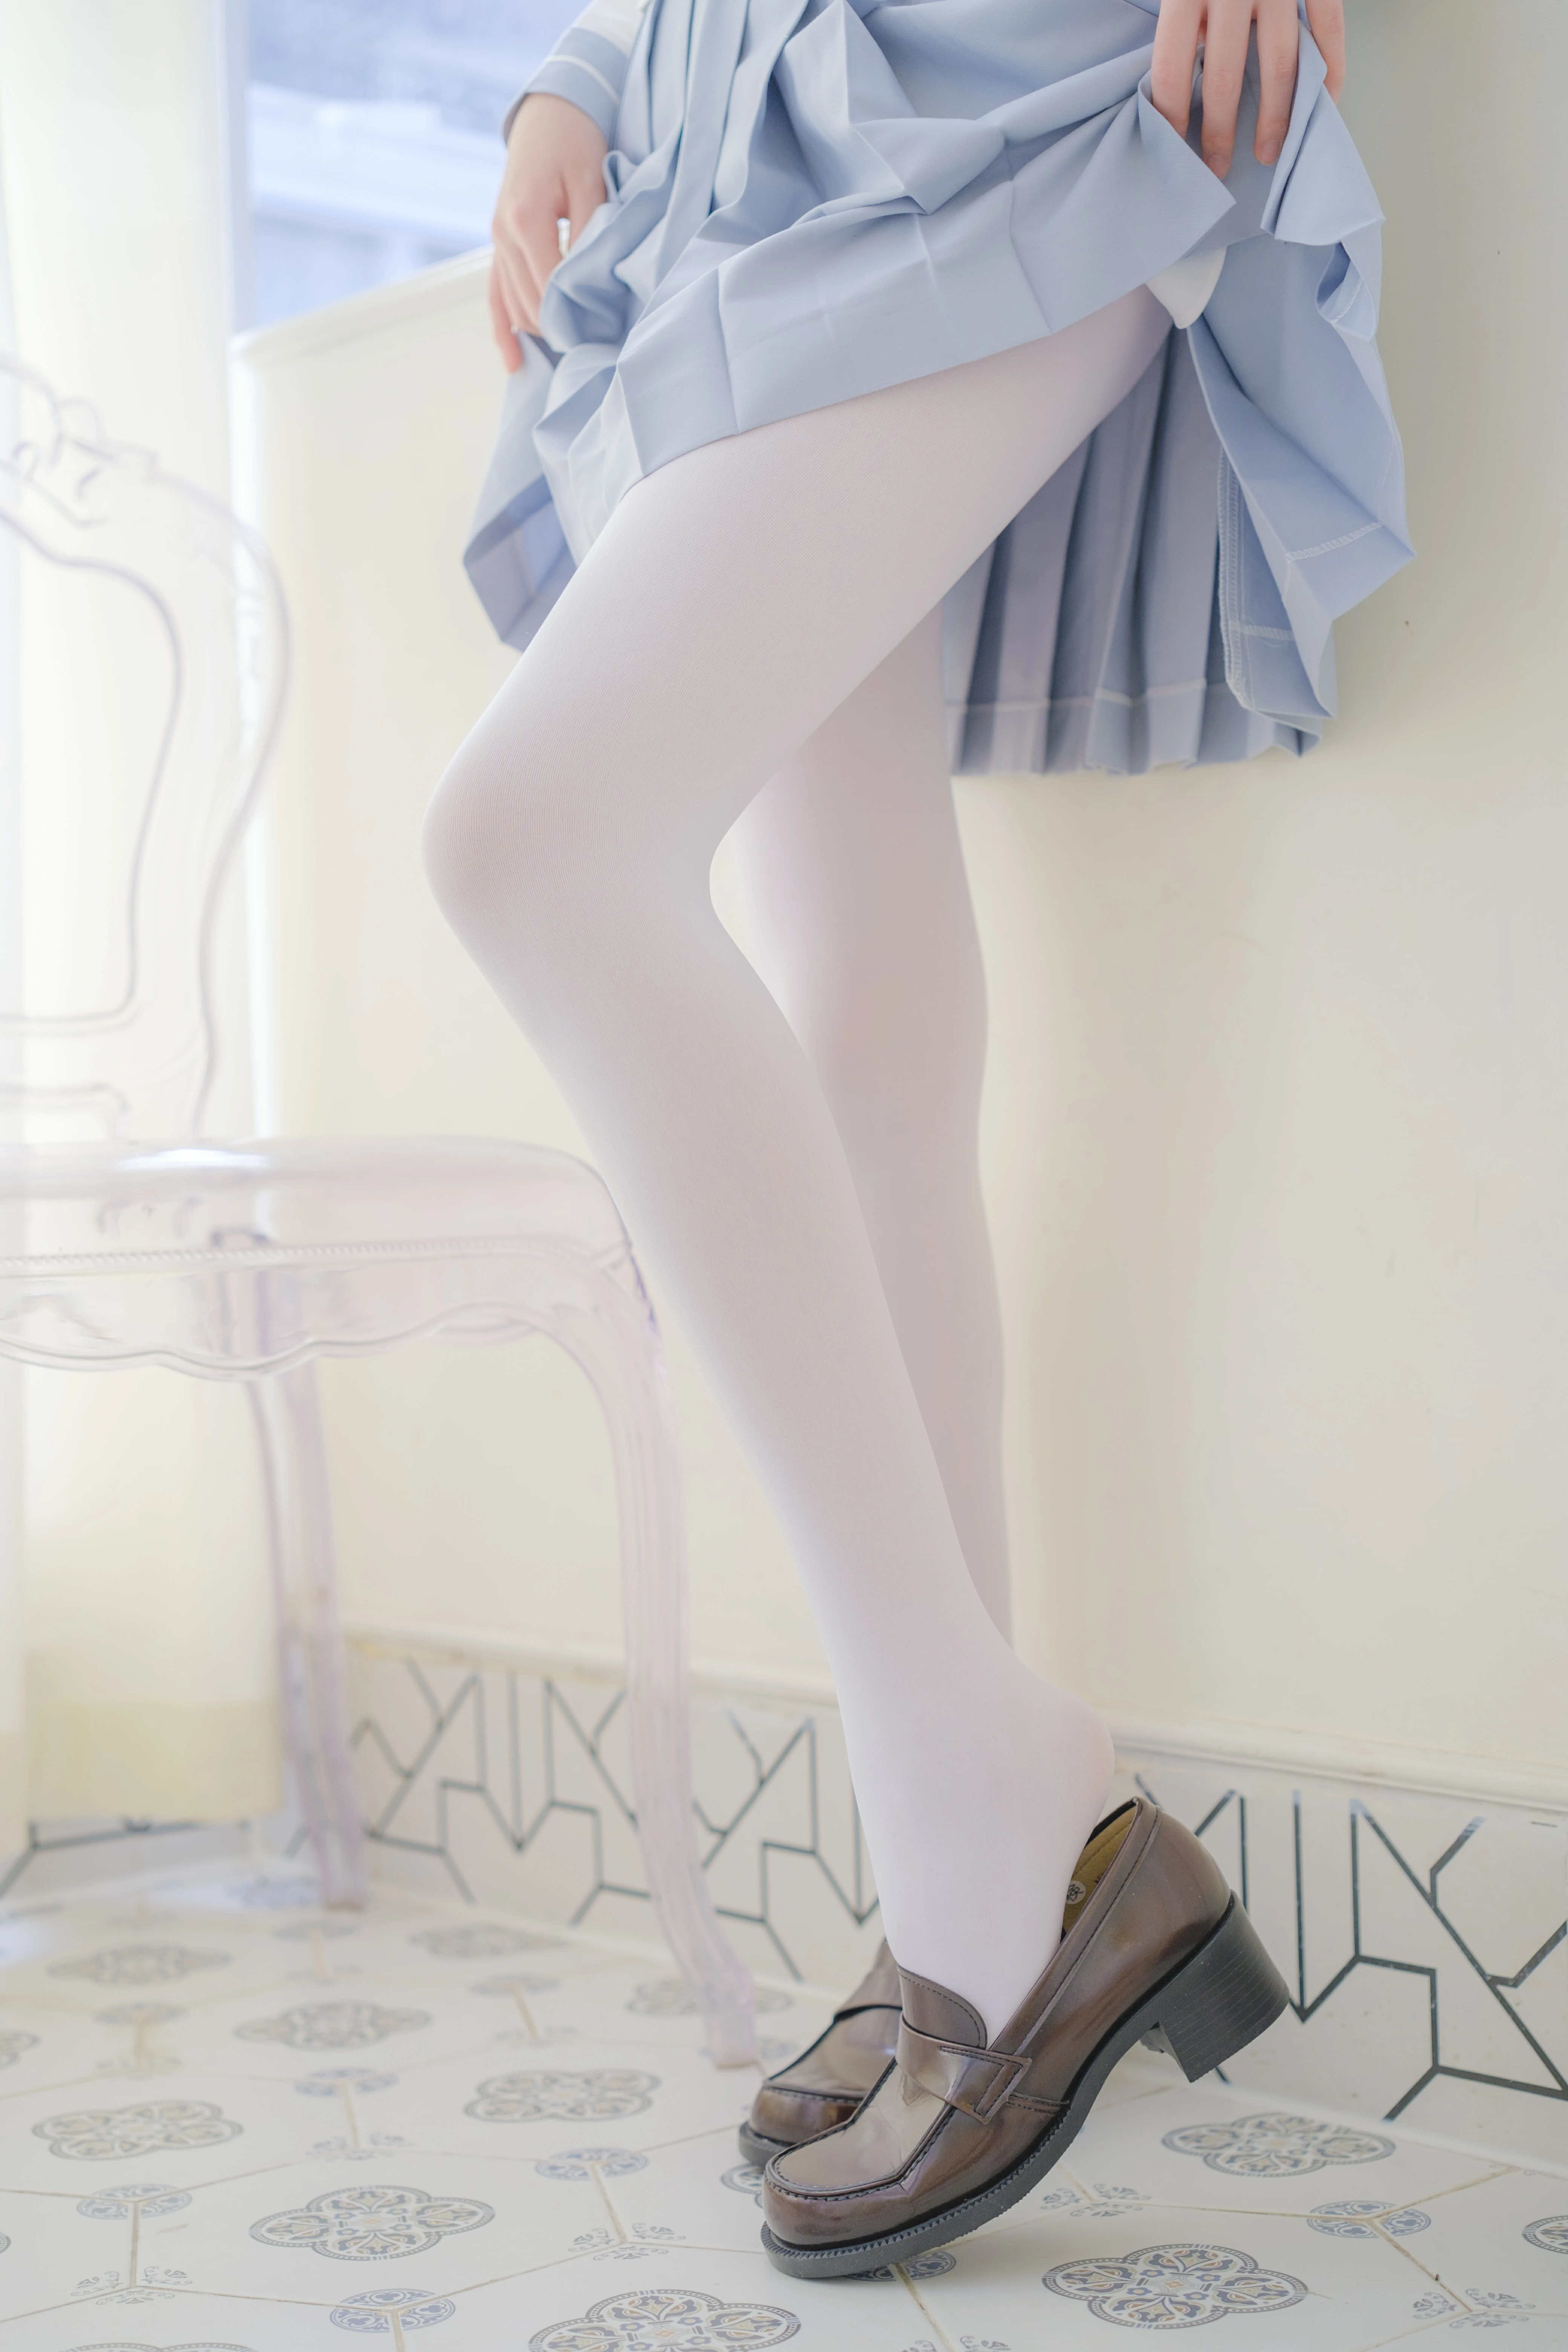 [森萝财团]GZAY4 酒店阳台上的JK制服小萝莉 白色衬衫与灰色短裙加白色丝袜美腿性感私房写真集,0022